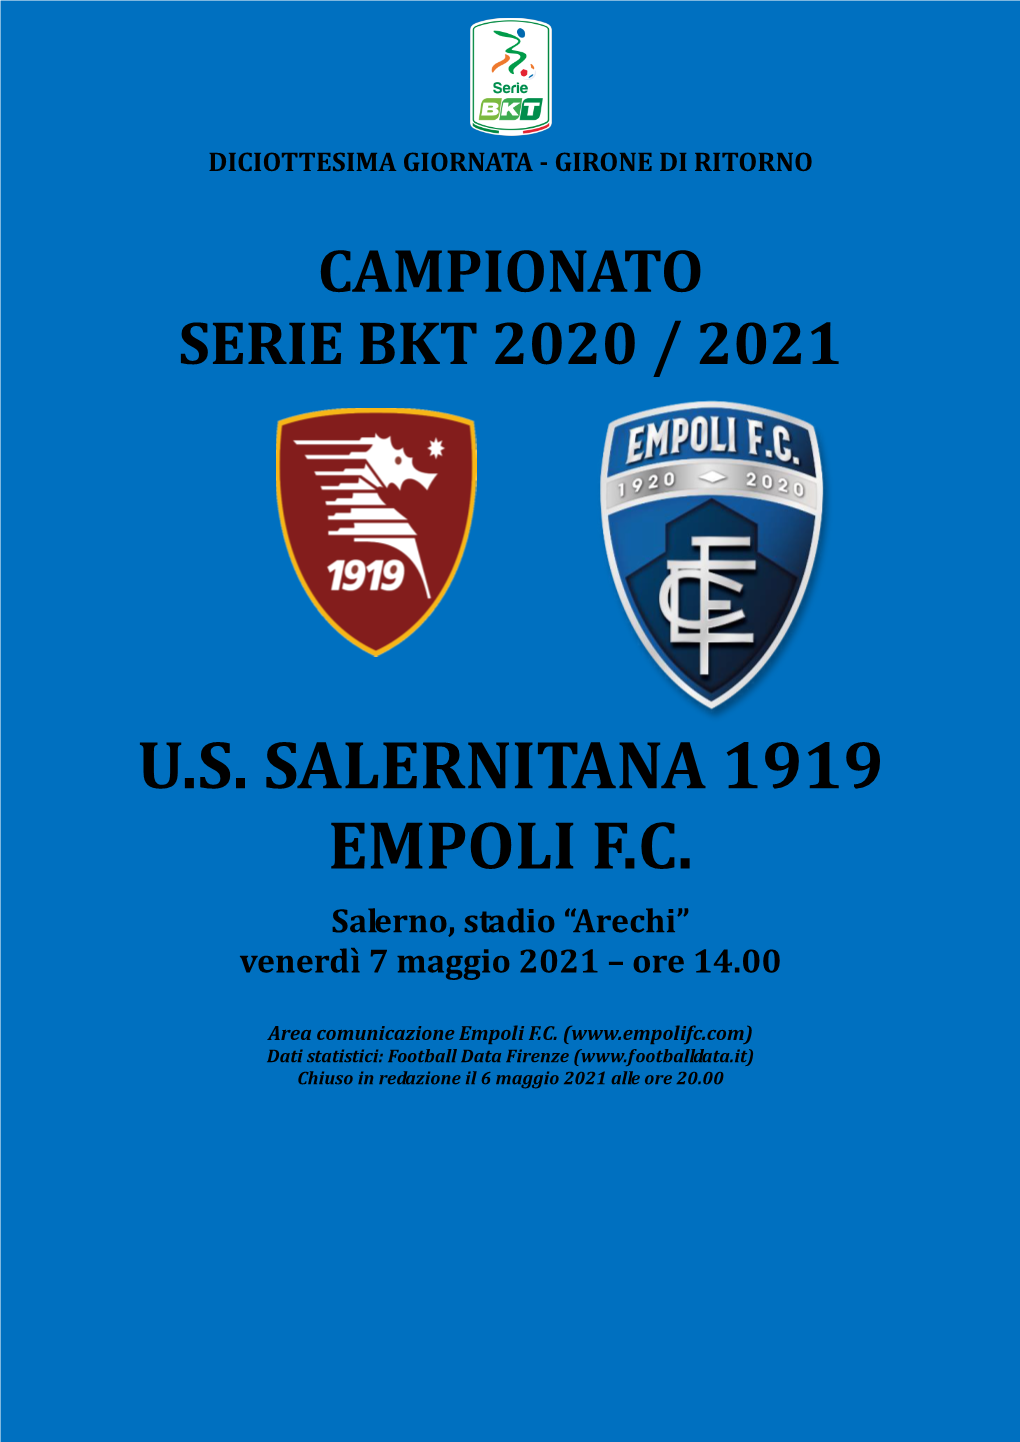 U.S. Salernitana 1919 Empoli F.C